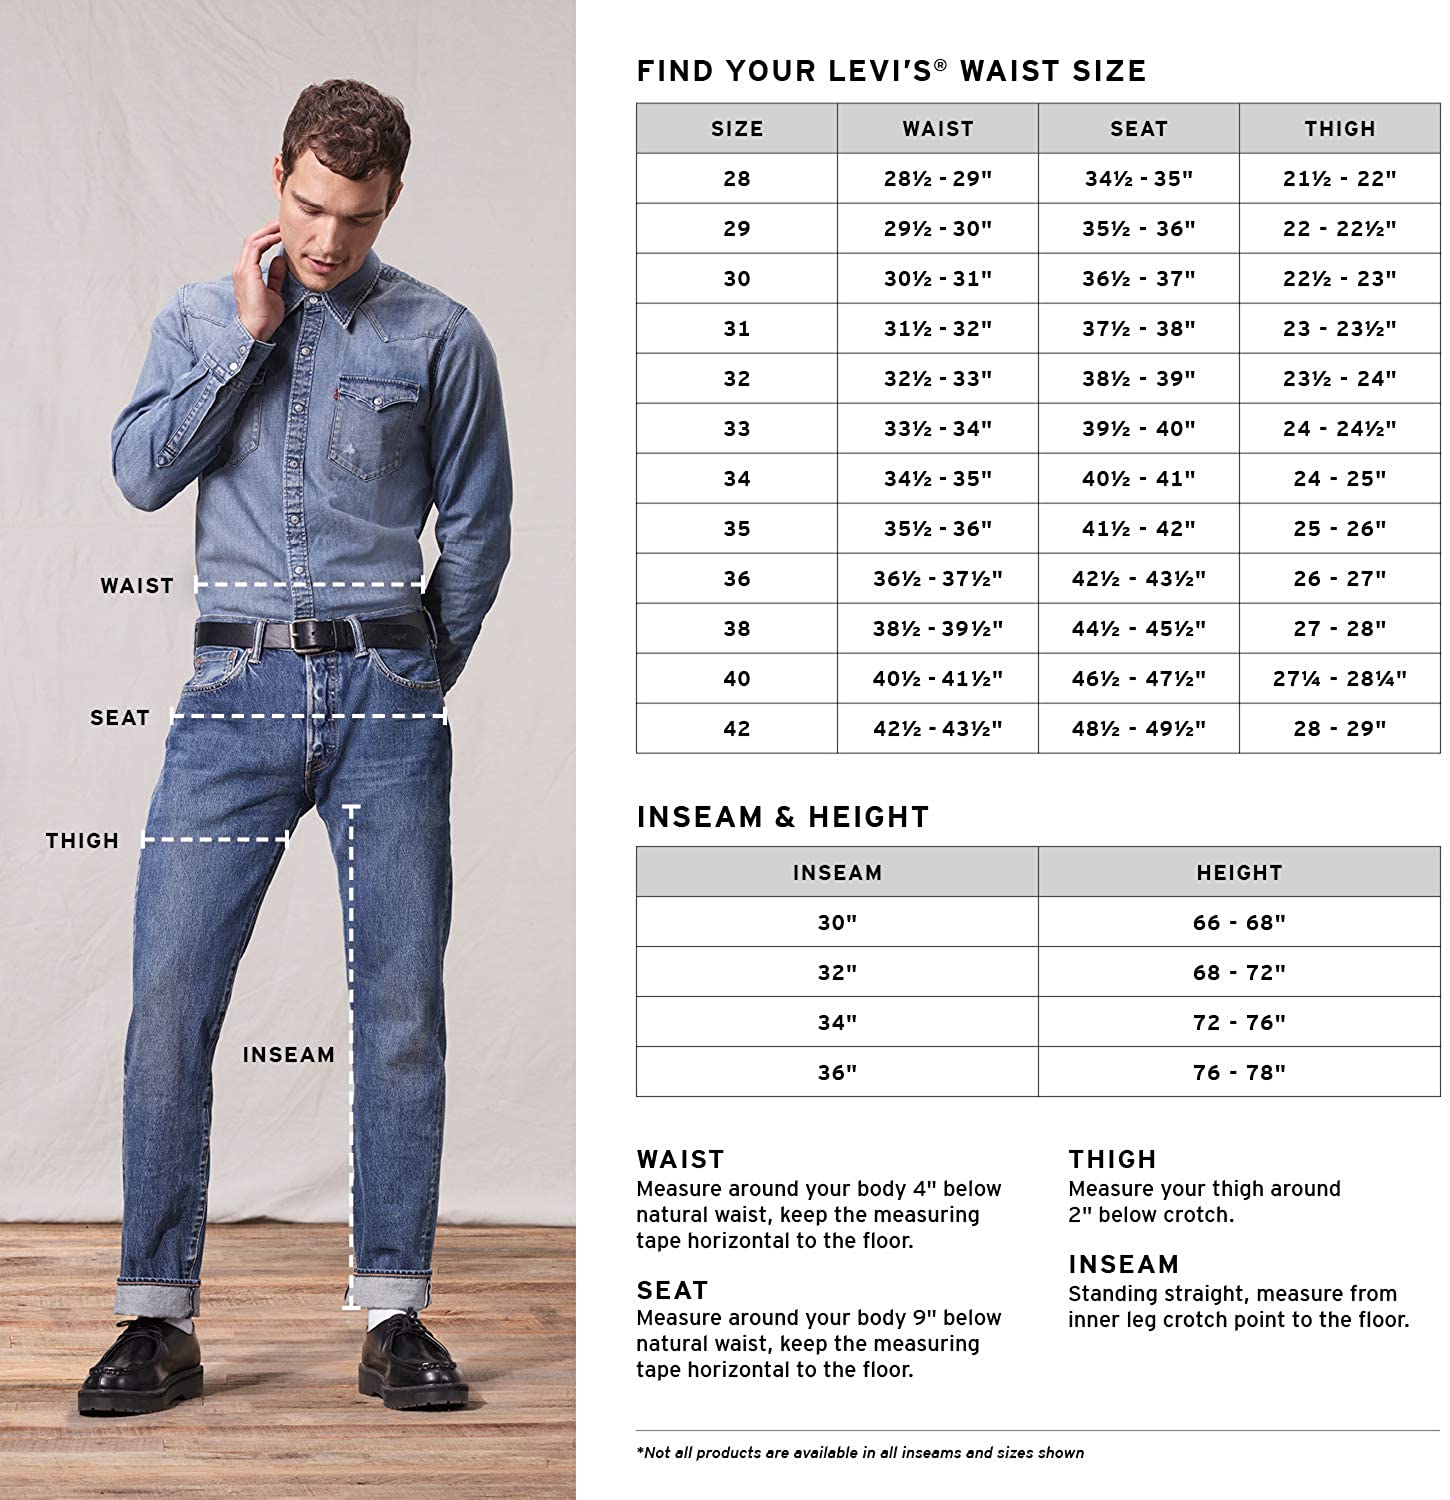 Размеры мужских джинсов: таблицы, способы определения, соответствие размеров